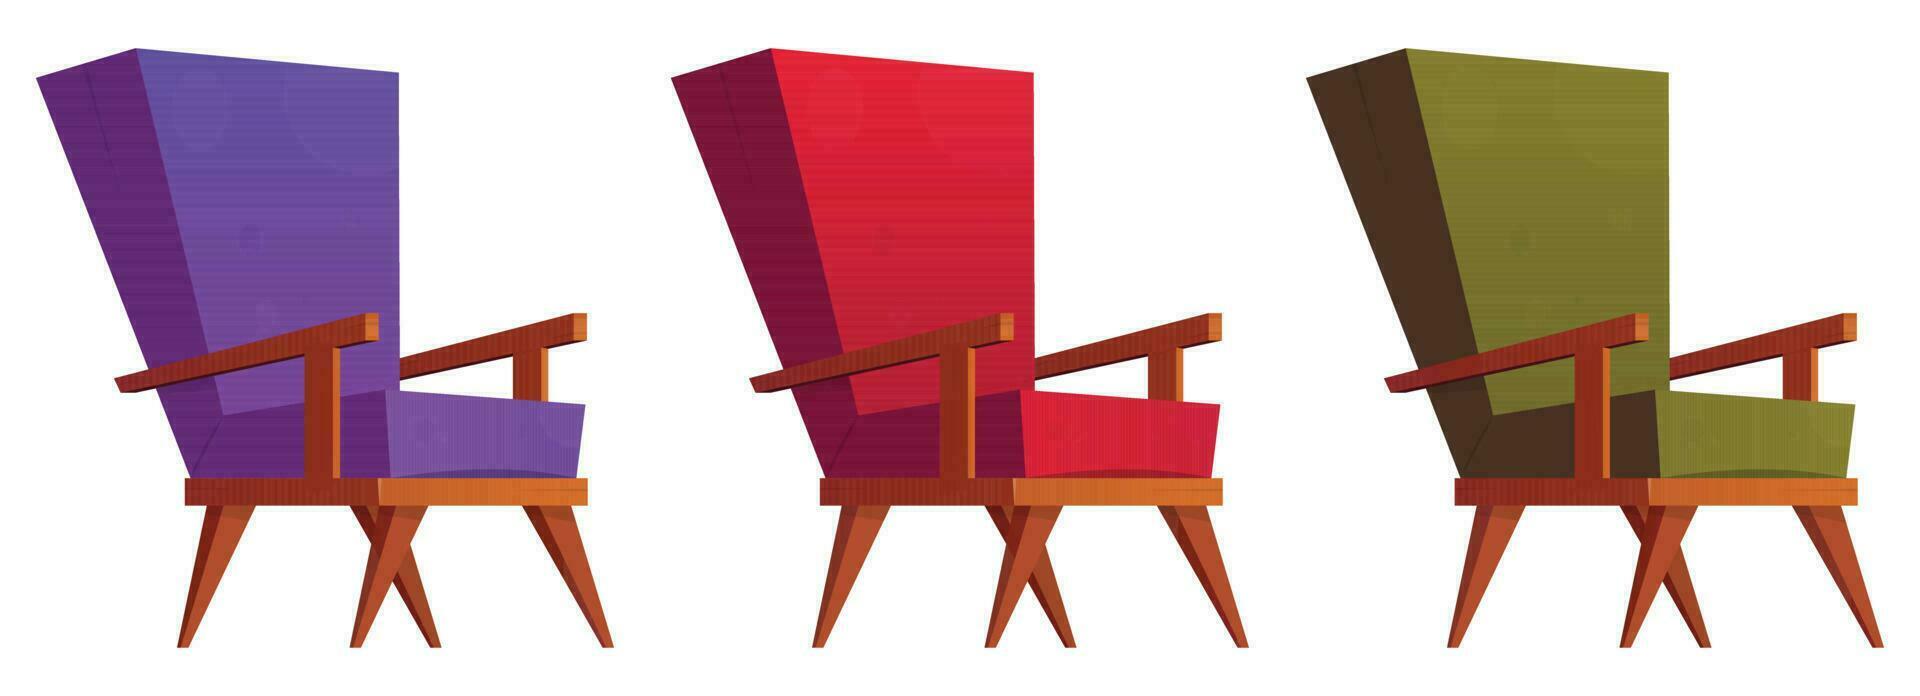 fauteuil collection dans dessin animé style vecteur illustration isolé sur blanc